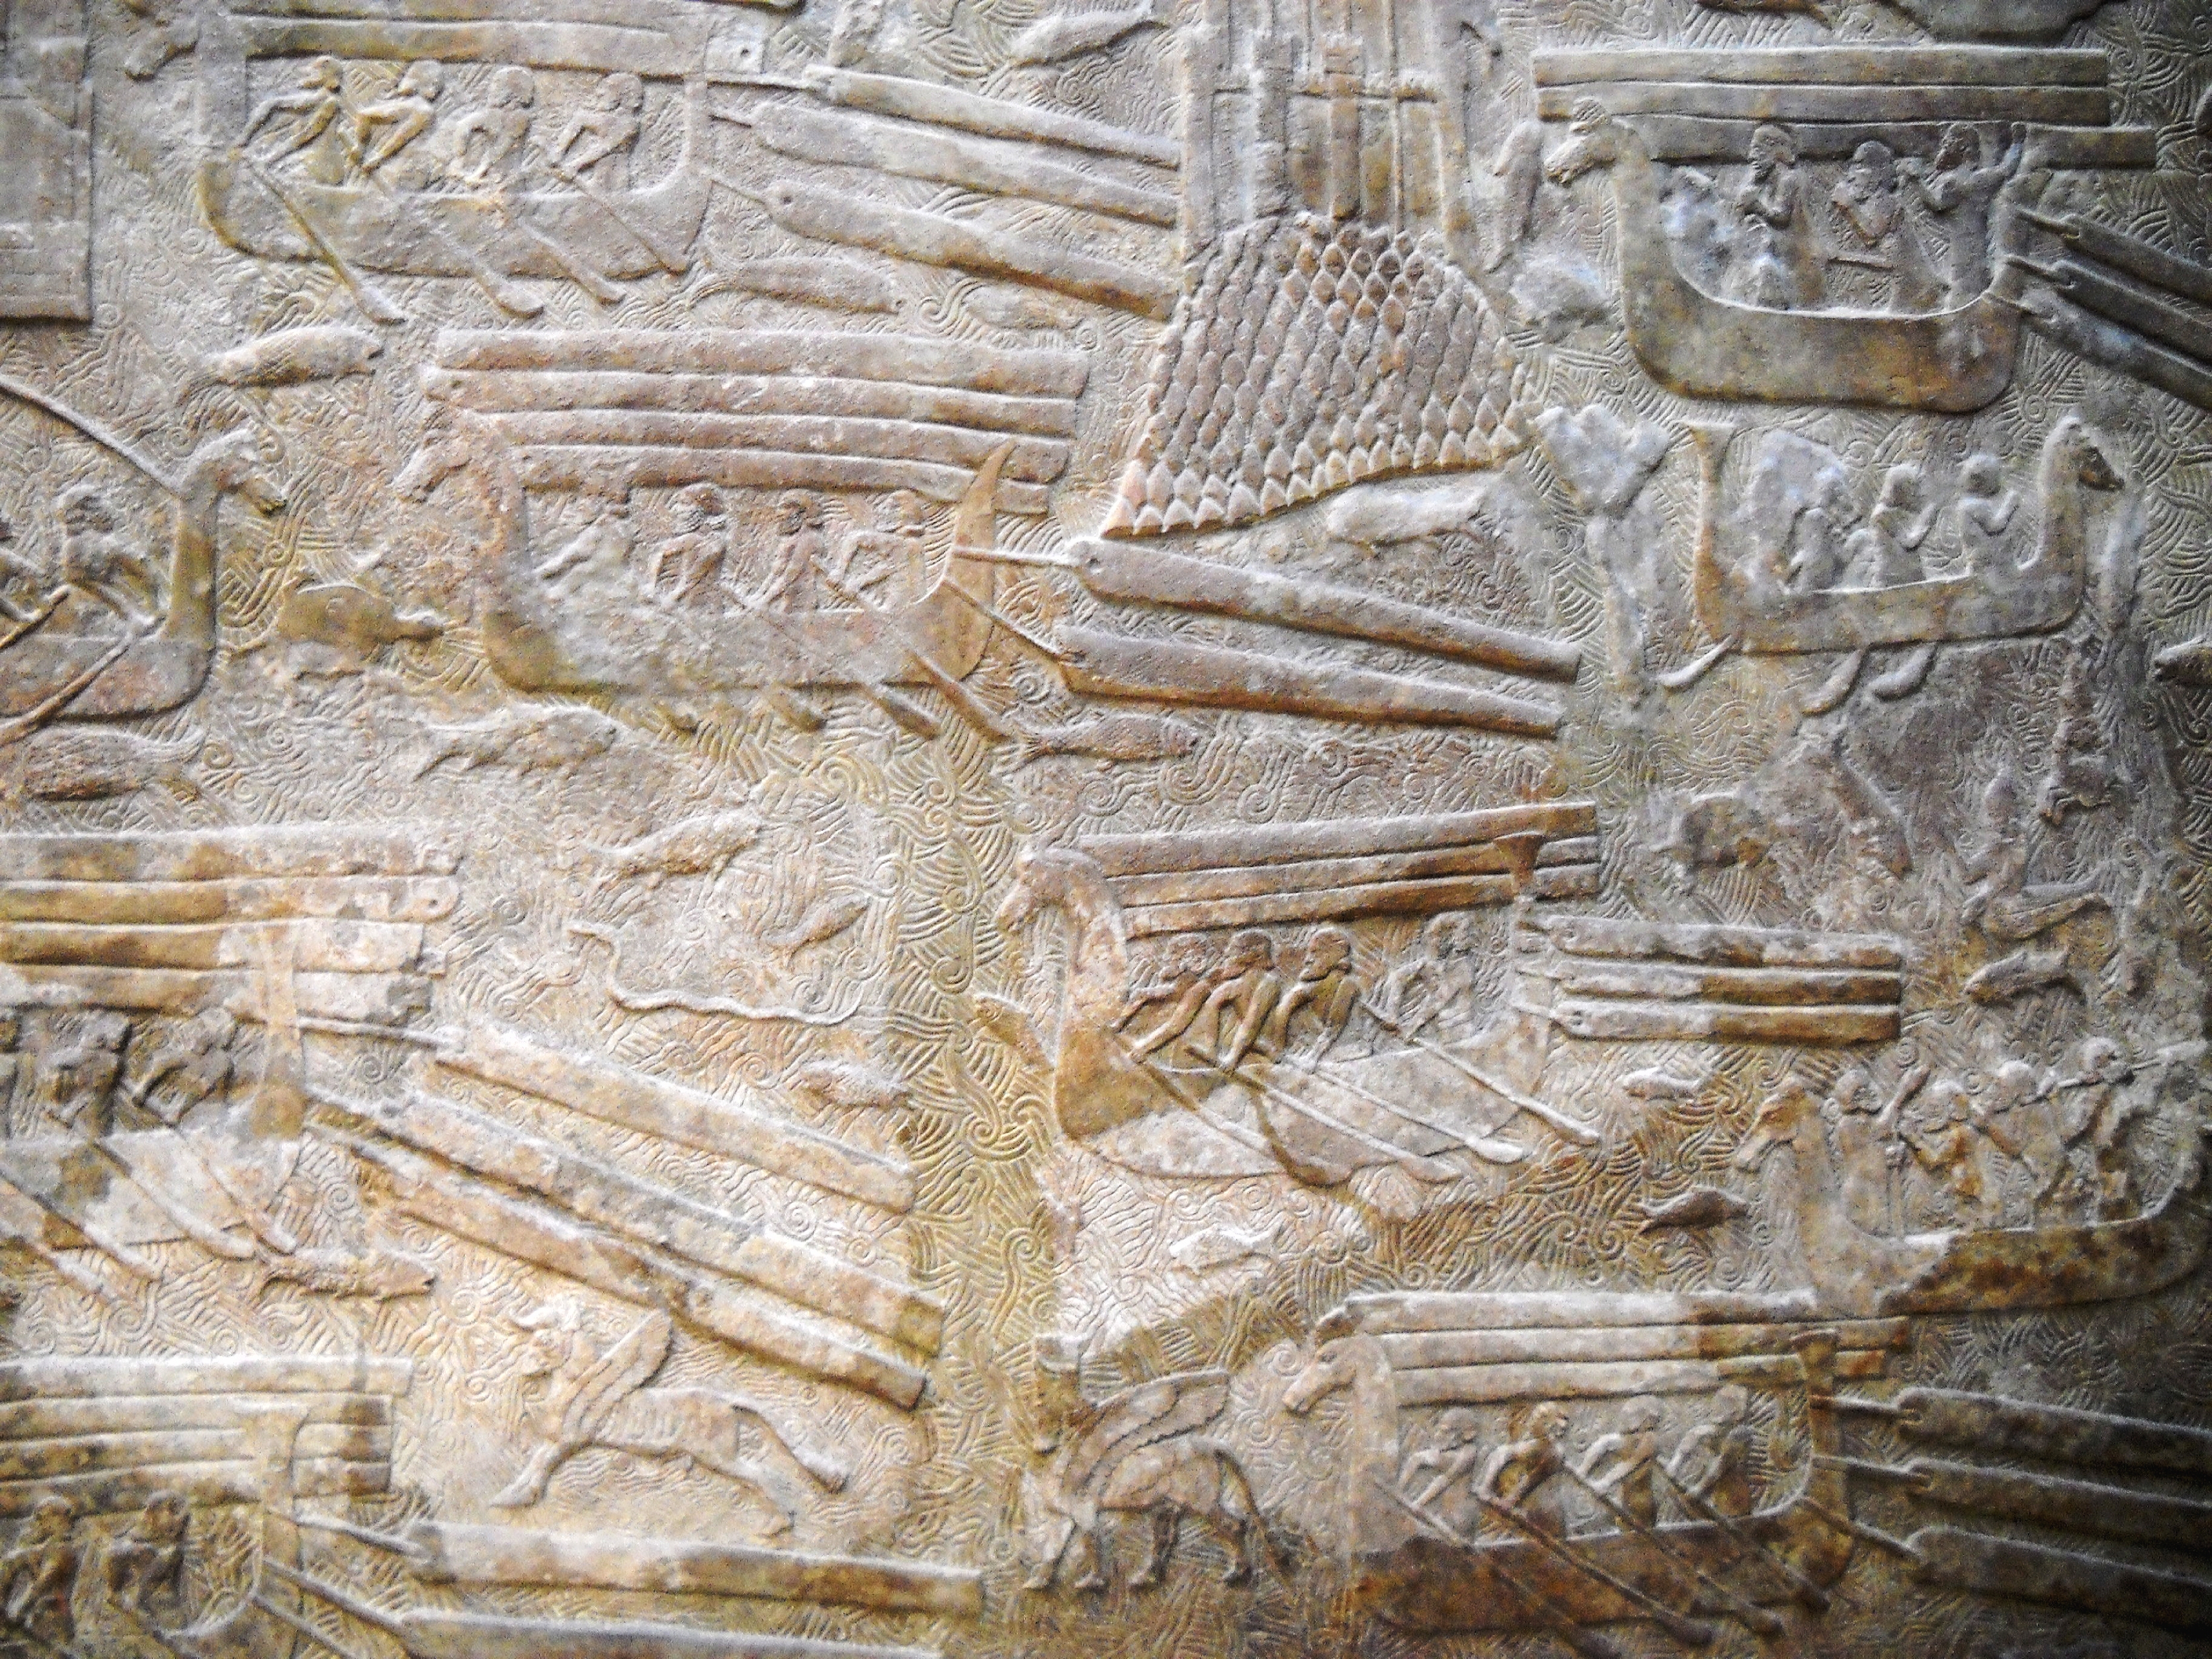 Фриз перевозки древесины by Неизвестный Художни - 710 г. до н.э. - 38 x 49 cm 